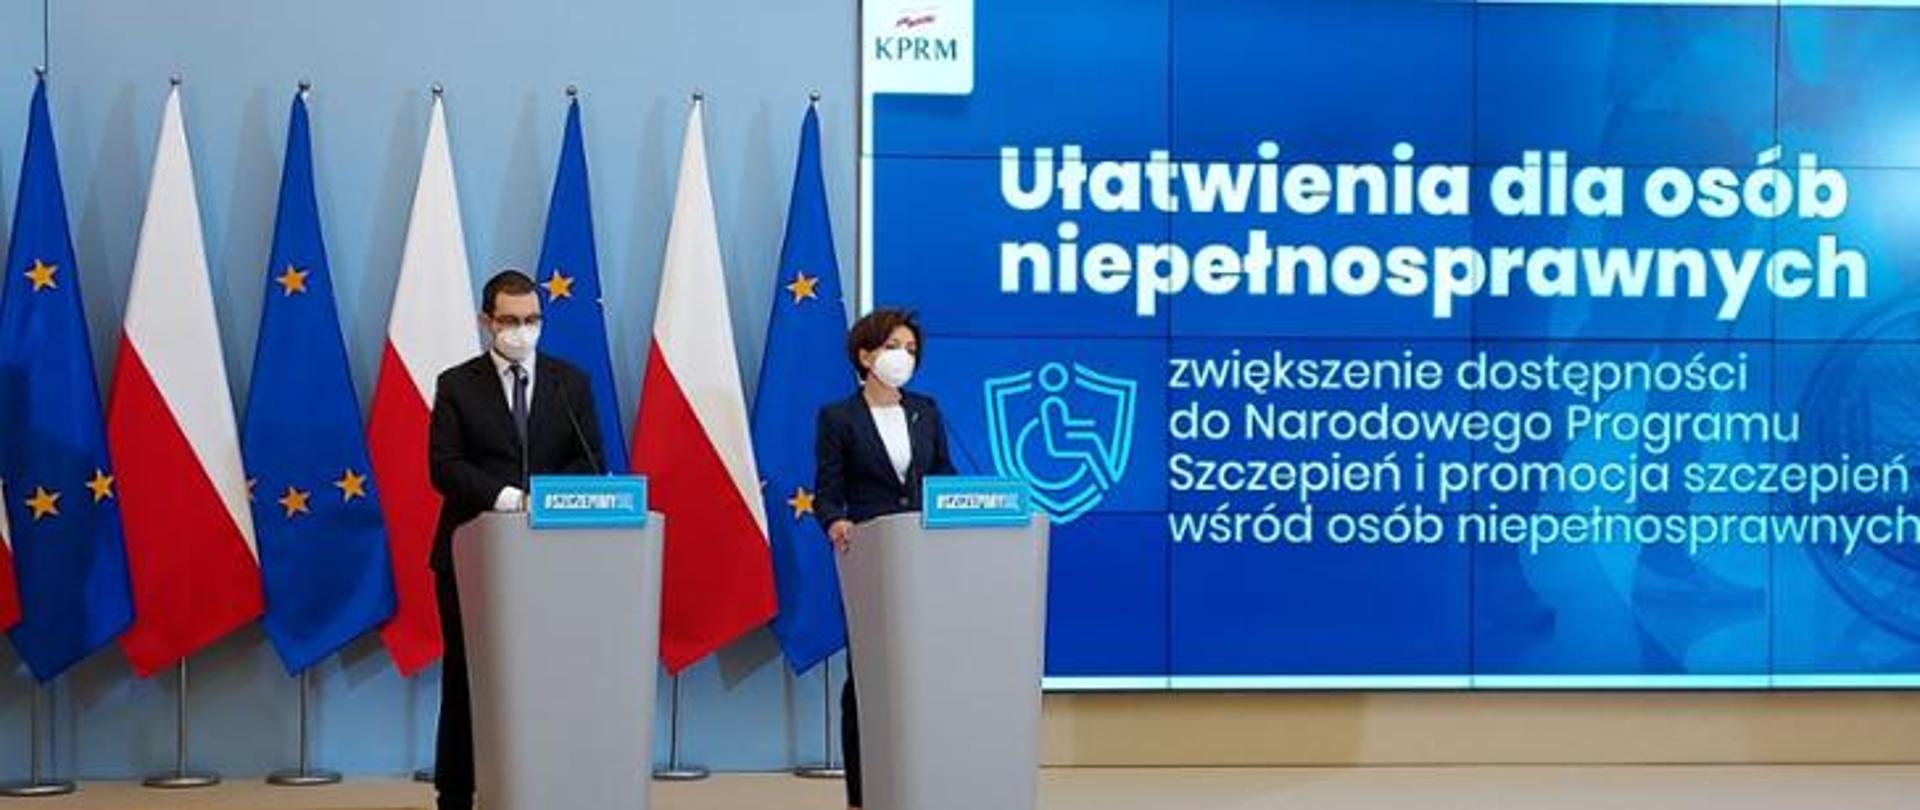 Konferencja prasowa. Za mównicami stoją dwie osoby. Tło stanowią stojące flagi Polski i UE oraz niebieski baner z napisem Ułatwienia dla osób niepełnosprawnych. Zwiększenie dostępności do Narodowego Programu Szczepień i promocja szczepień wśród osób niepełnosprawnych